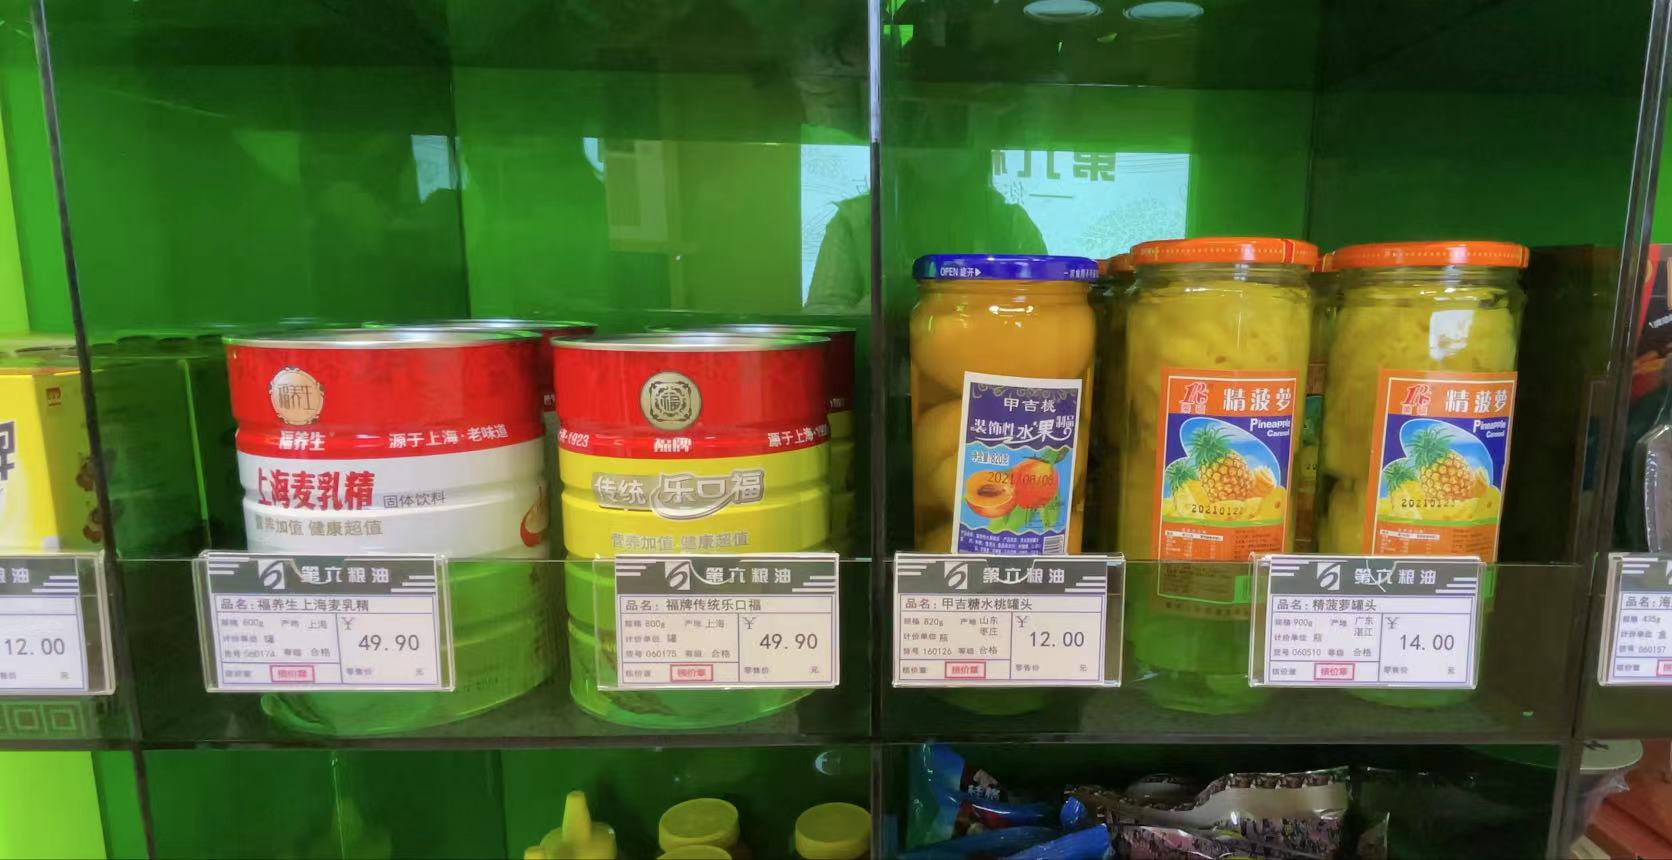 “第六粮油”售卖的宝藏食品：麦乳精、乐口福、水果罐头。